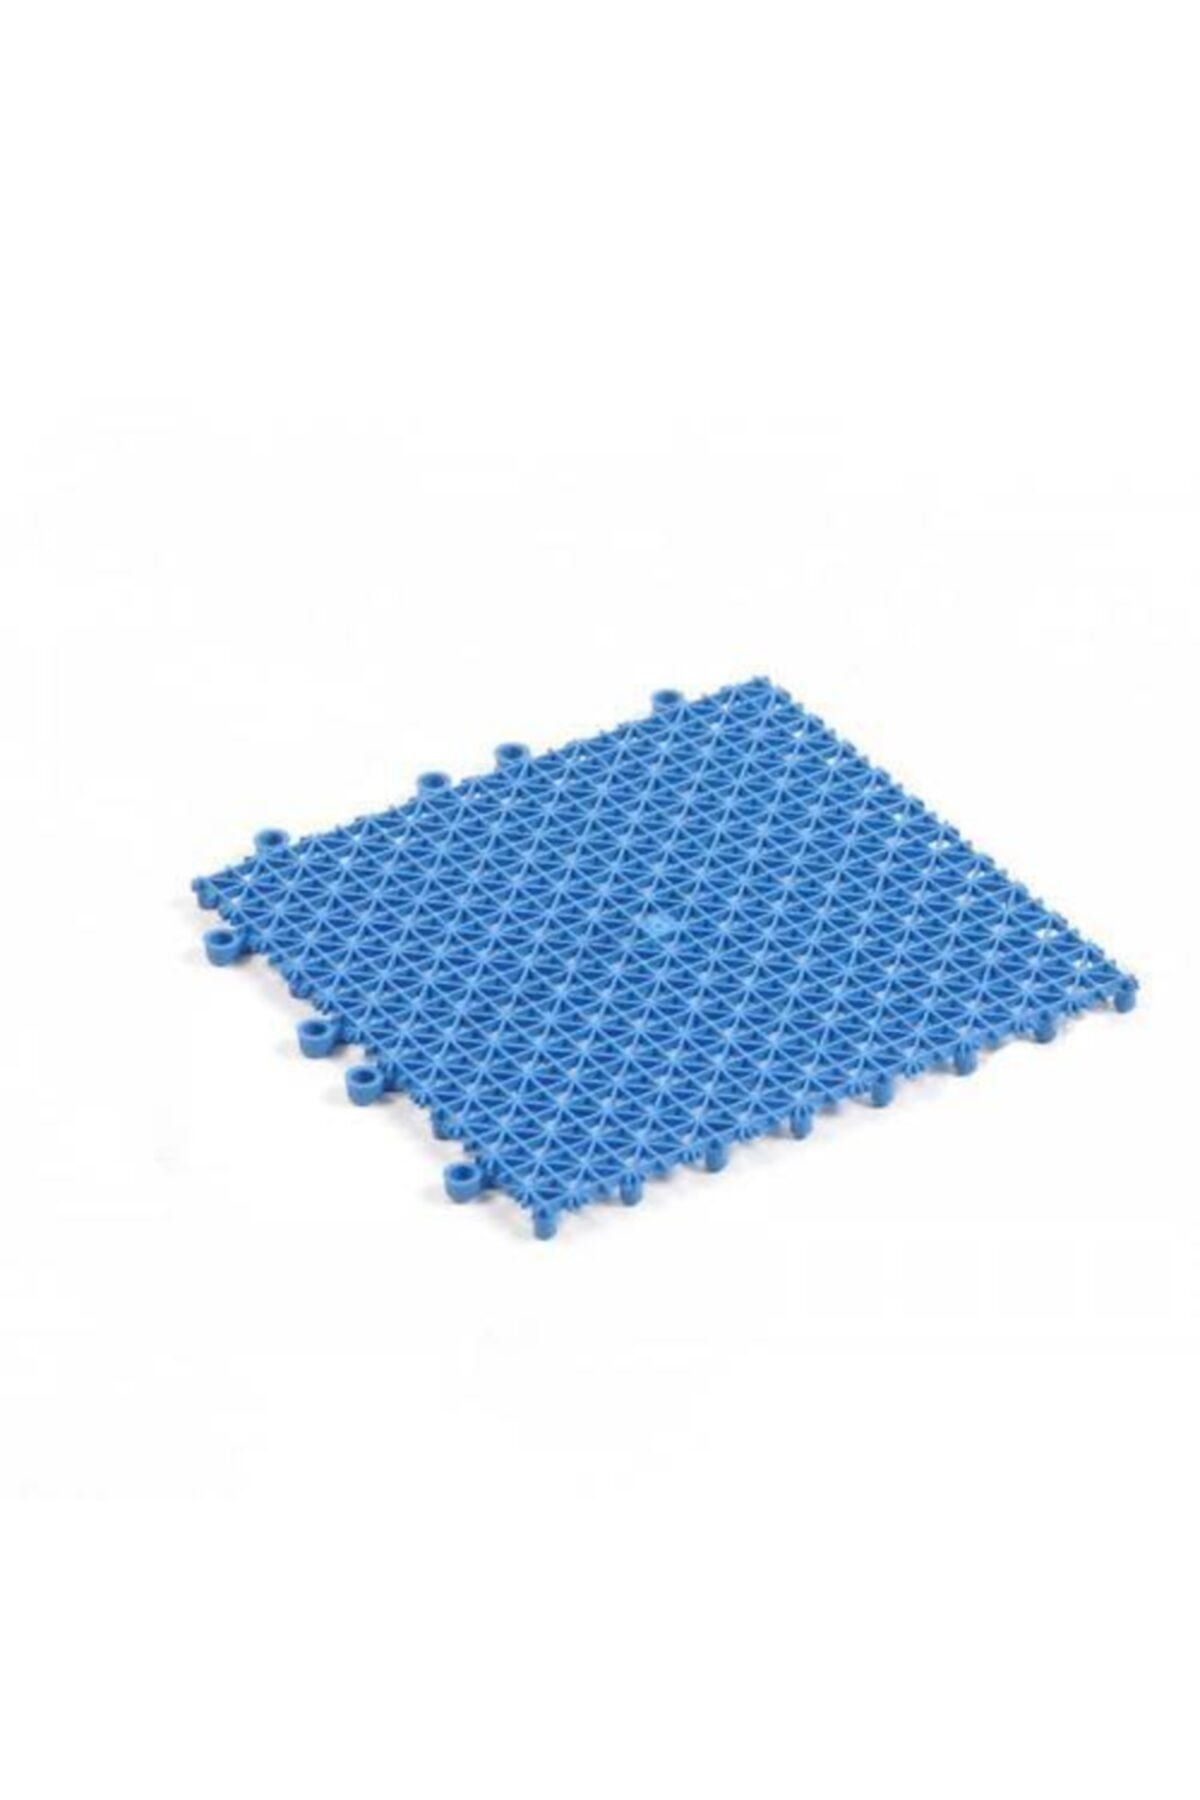 BİRTIKLASİZDE Mavi Plastik Kırılmaz Yer Karosu Zemin Kaplaması 1m2 ( 16 Adet ) 25 X 25 Cm mavikaro